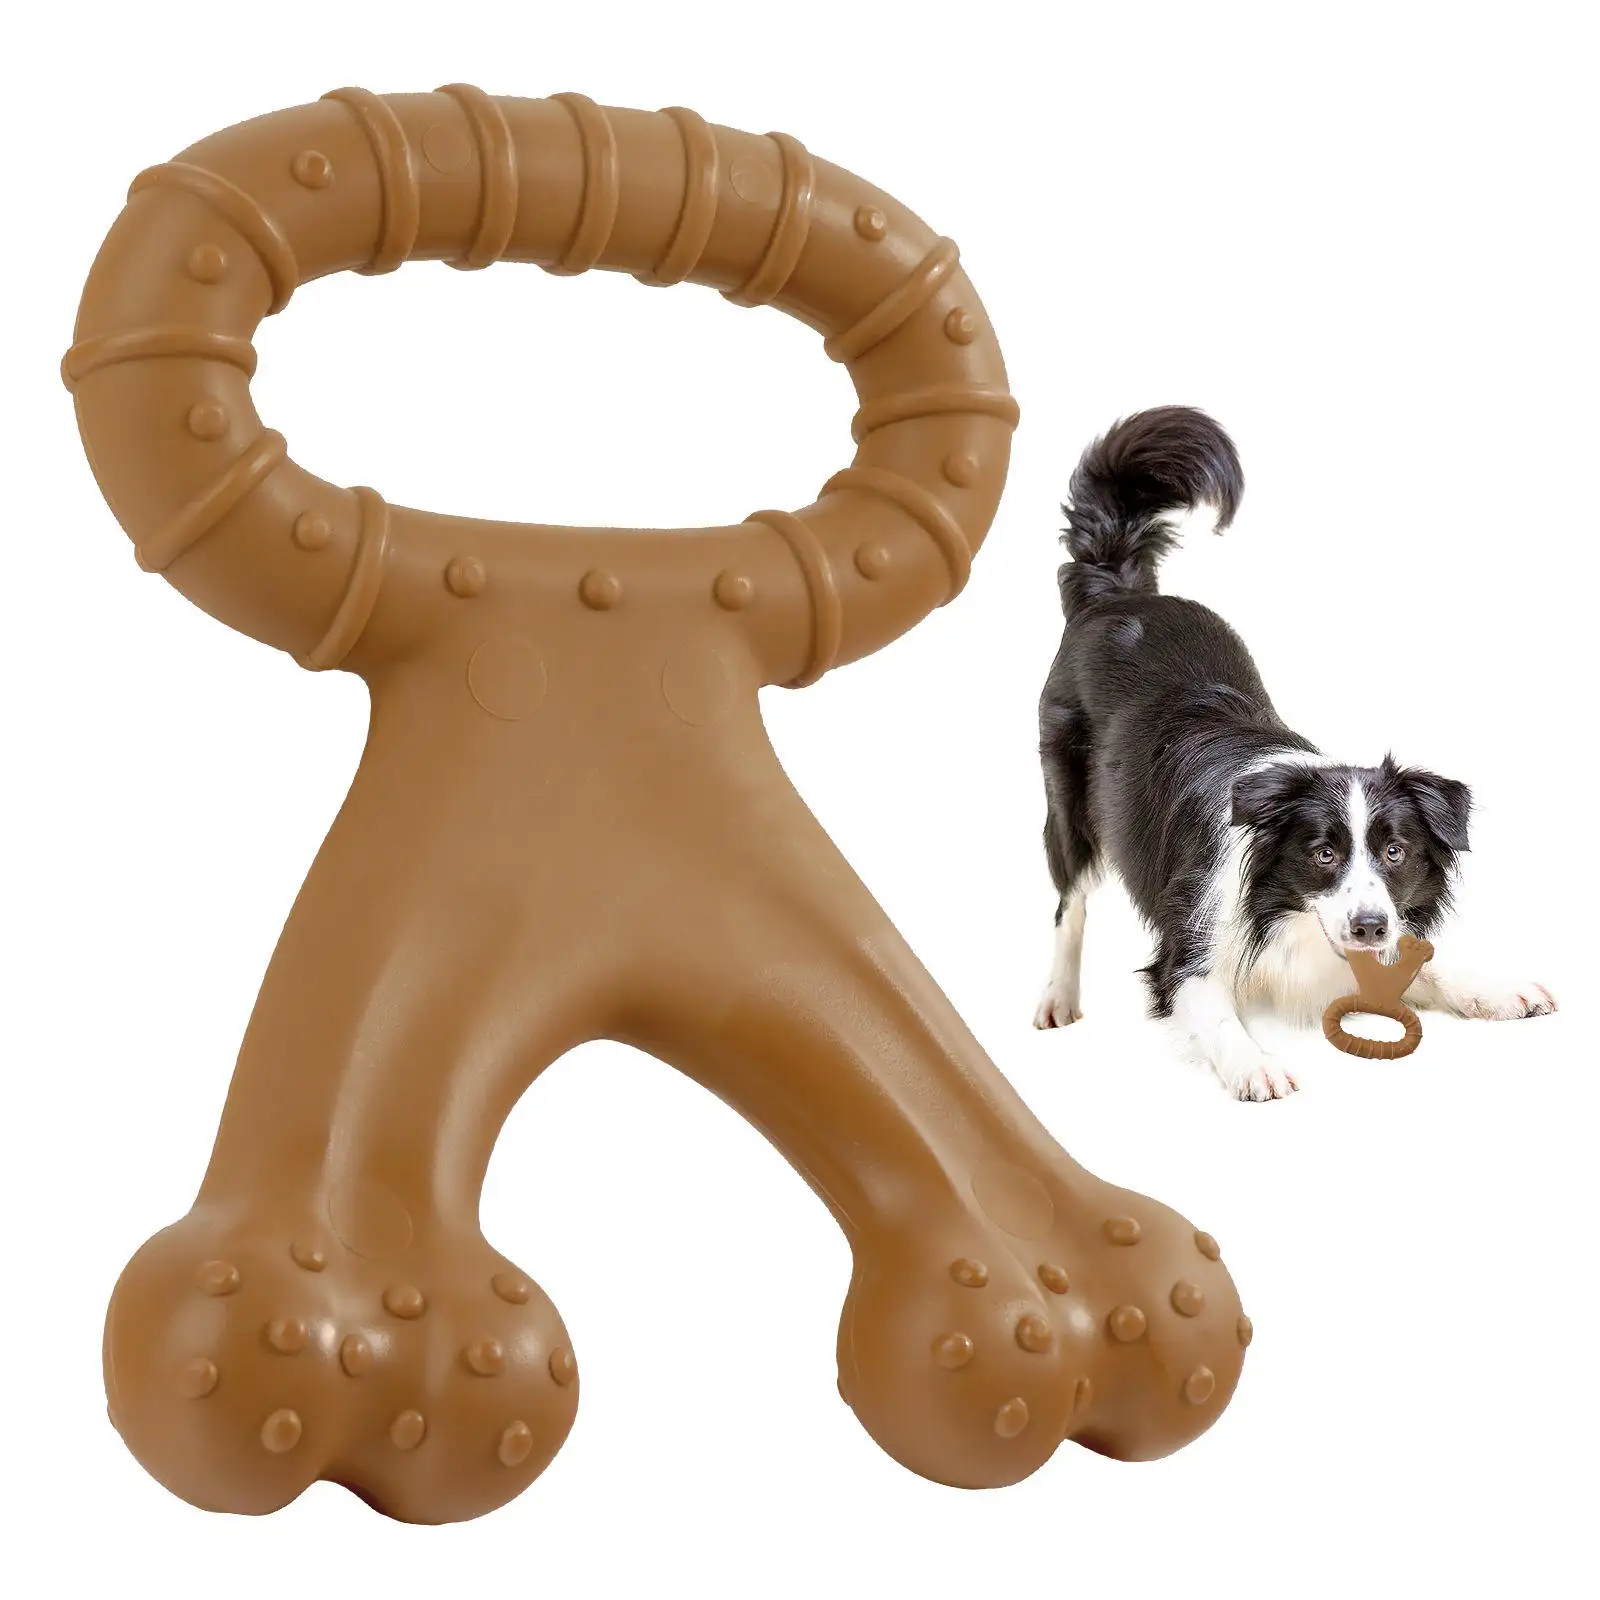 2022 Amazon Venta caliente perro fuerte juguete de peluche juego de rompecabezas interactivo juguetes para perros muestras gratis perro remolcador juguete chirriante para la diversión